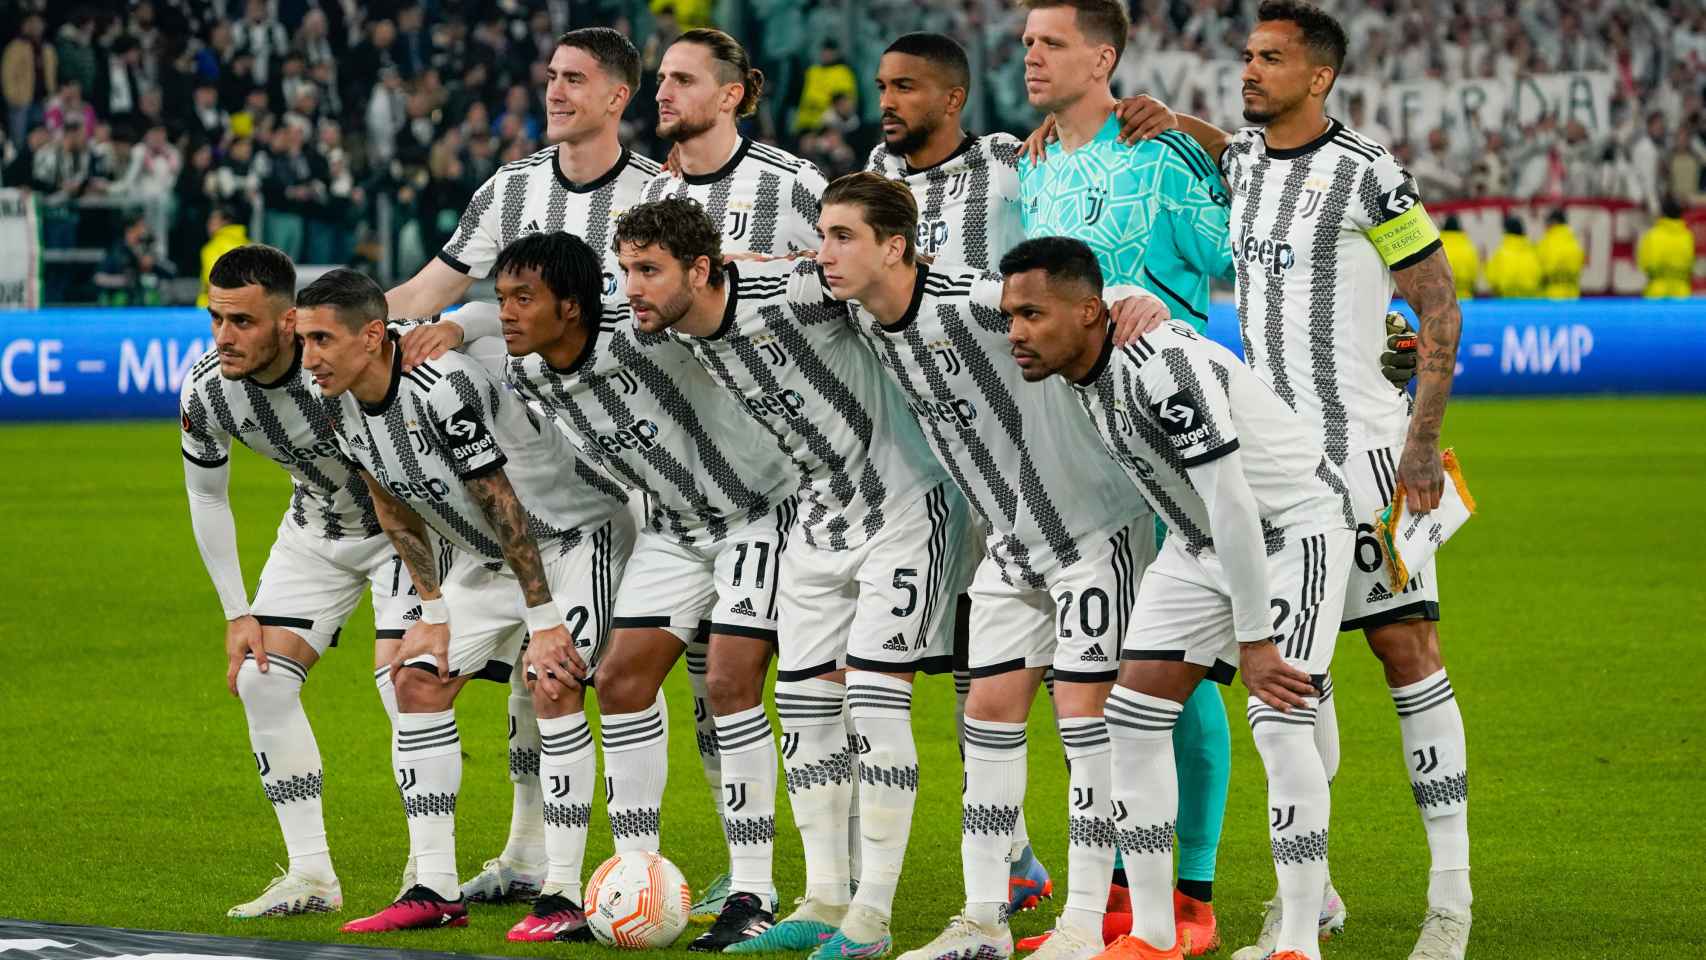 La alineación titular de la Juventus antes de un partido